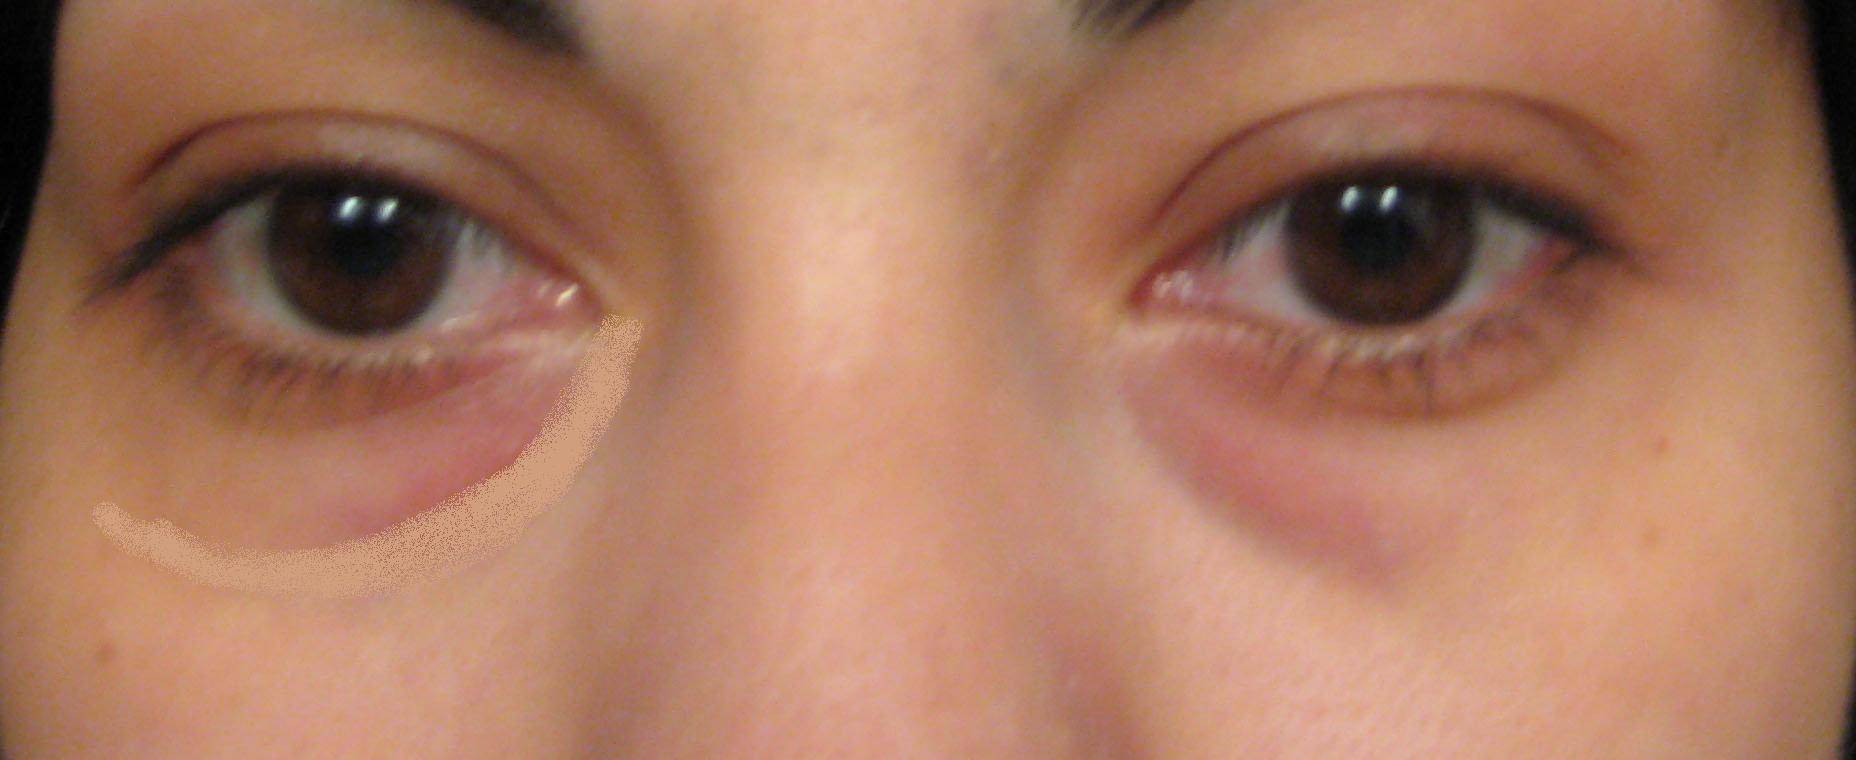 Мешки под глазами - причины и лечение у детей и взрослых. - moscoweyes.ru - сайт офтальмологического центра "мгк-диагностик"